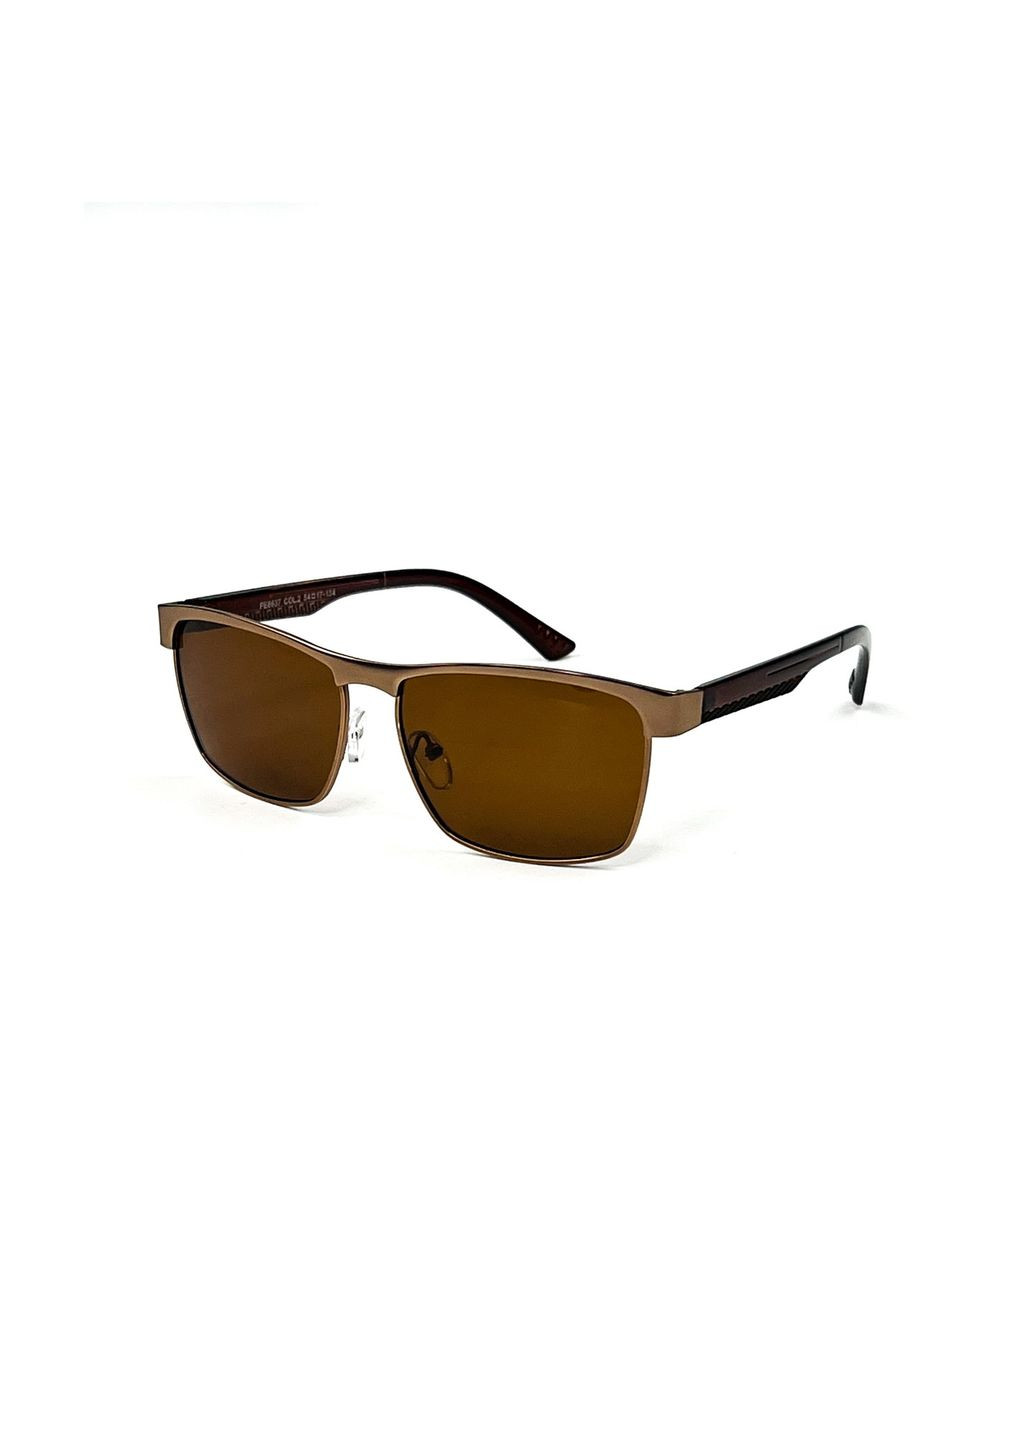 Солнцезащитные очки с поляризацией Классика мужские 388-956 LuckyLOOK 388-956m (291884143)